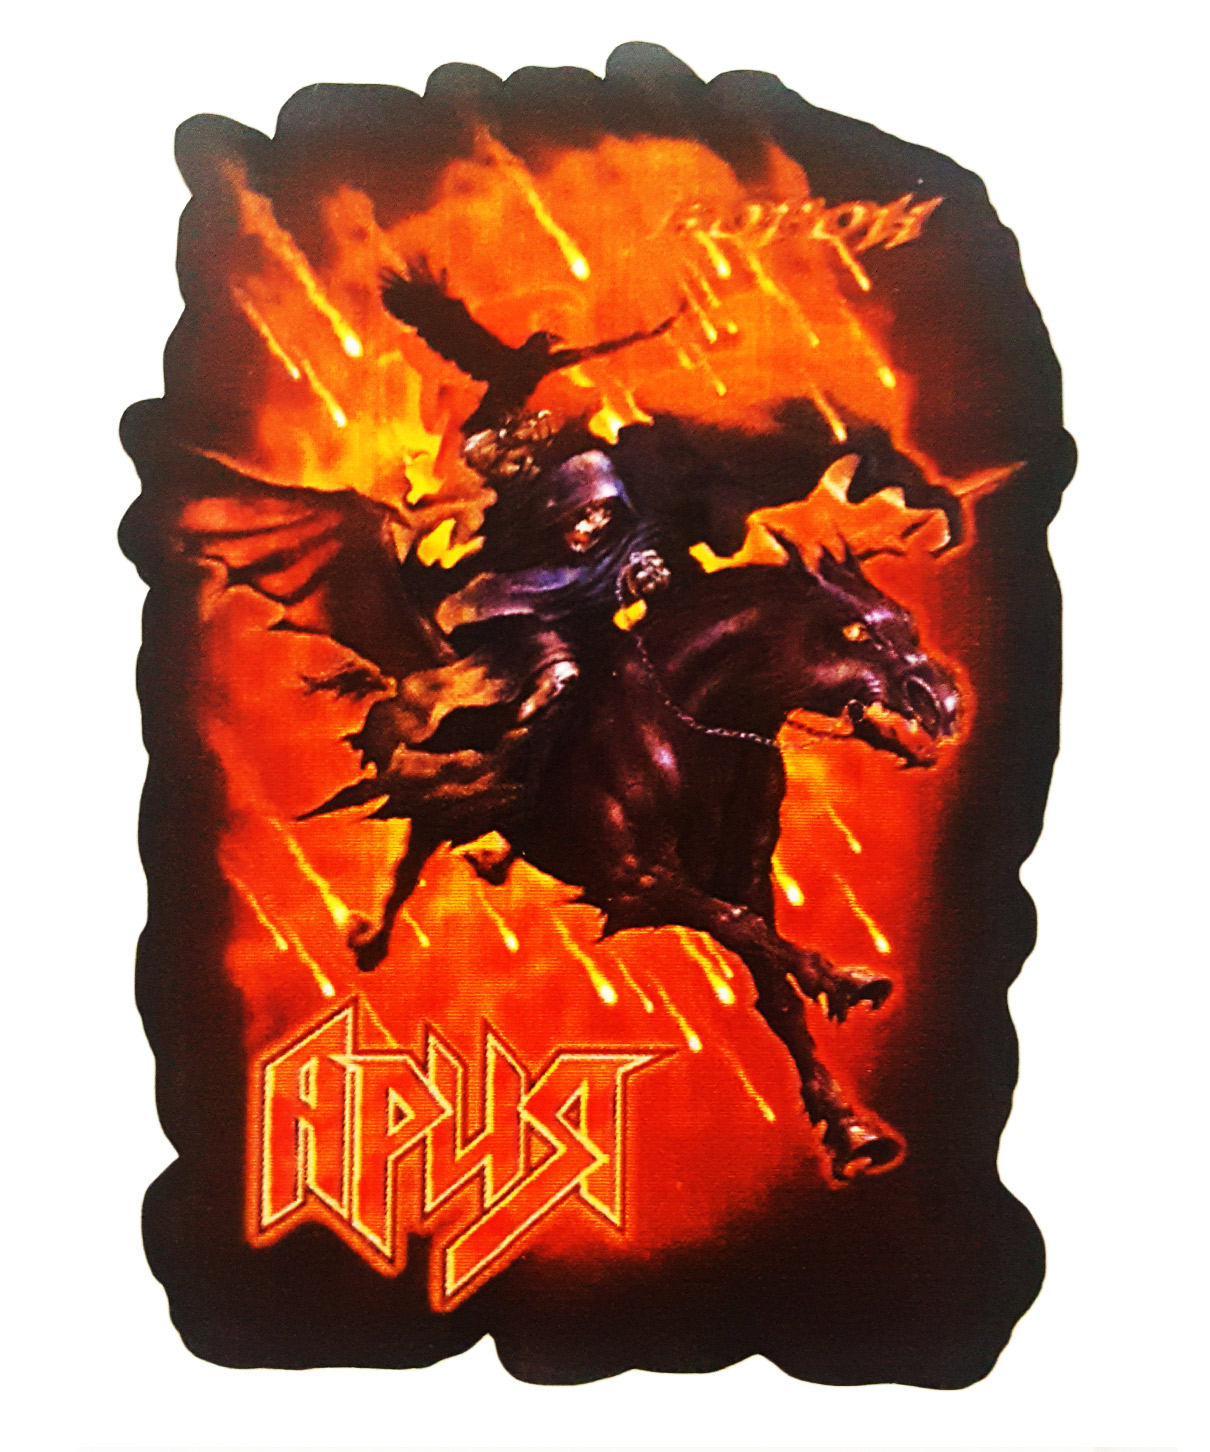 Наклейка-стикер Ария - фото 1 - rockbunker.ru